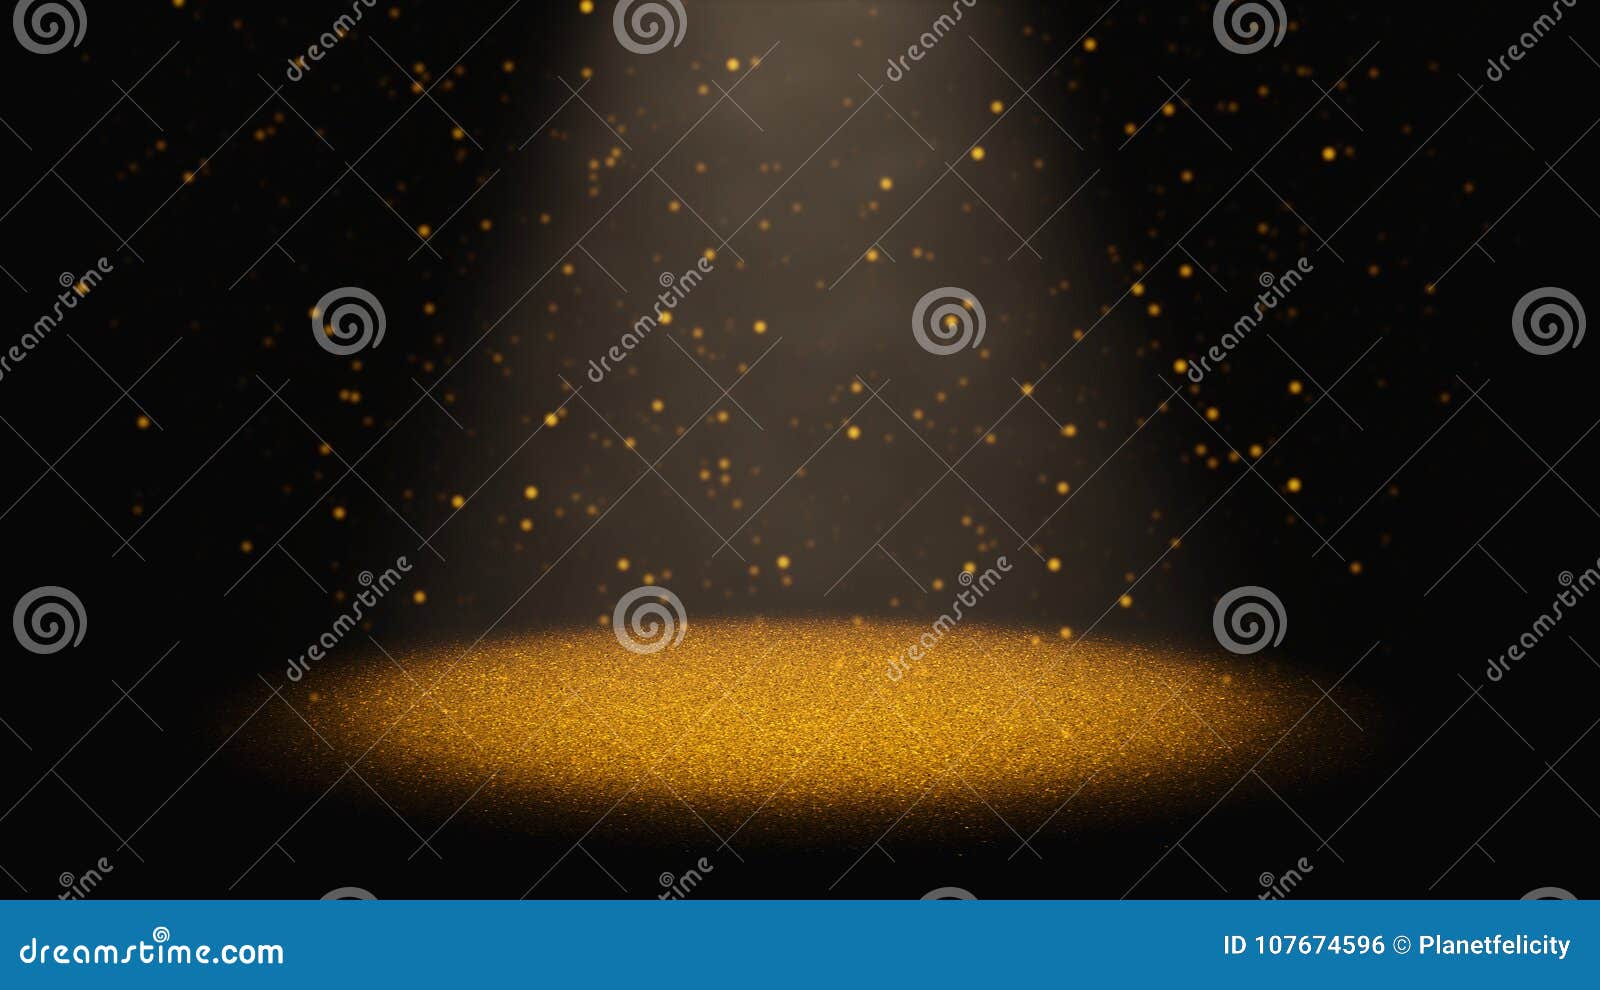 Ánh sáng vàng rơi qua nón sáng là một khung cảnh tuyệt đẹp để chiêm ngưỡng những hạt lấp lánh vàng rực rỡ. Hãy xem hình ảnh liên quan để thấy cảm giác dịu dàng và lãng mạn mà ánh sáng vàng đem lại.